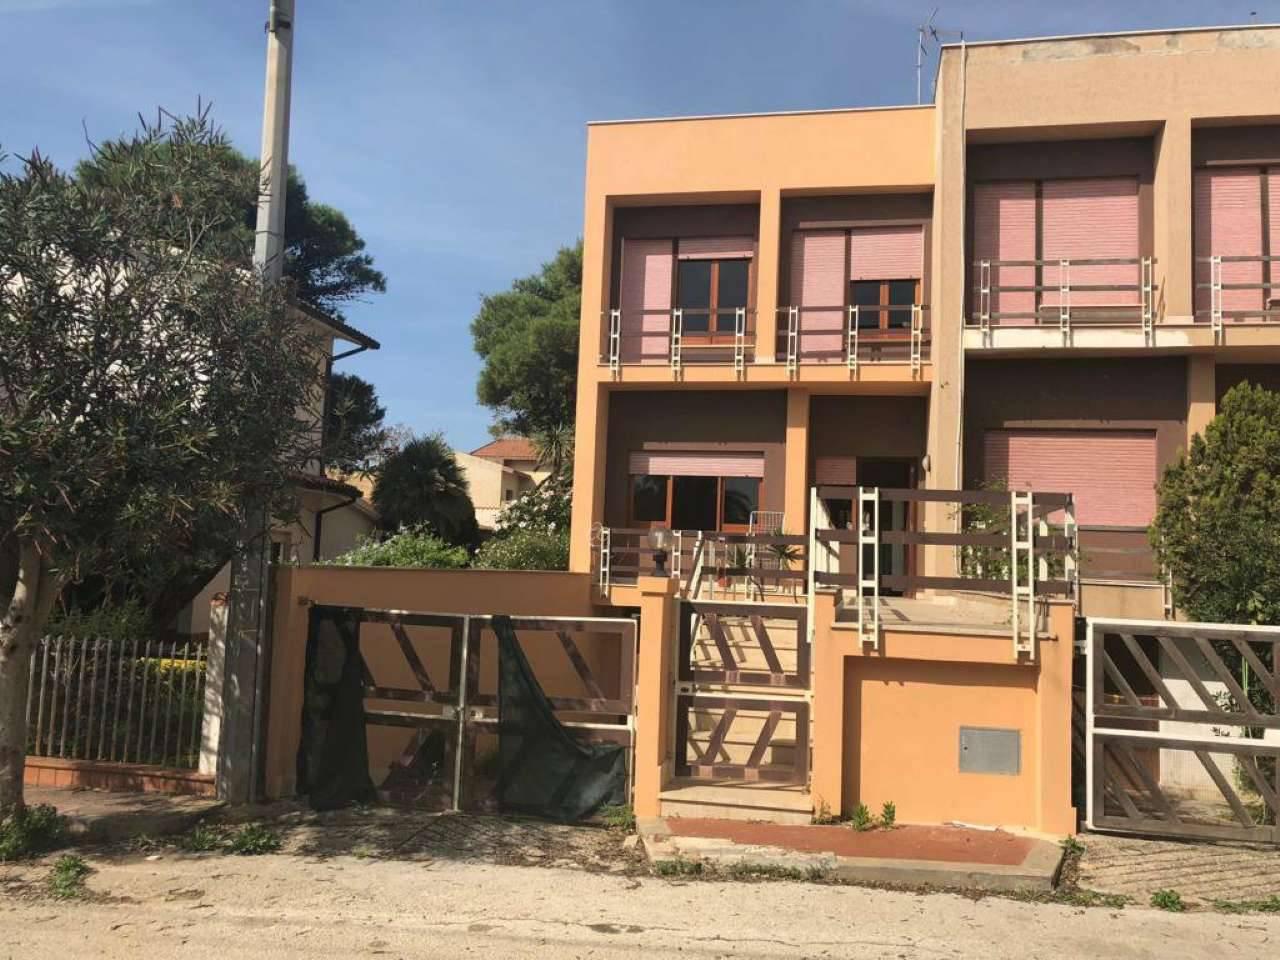 Villa a schiera in vendita a Campobello Di Mazara